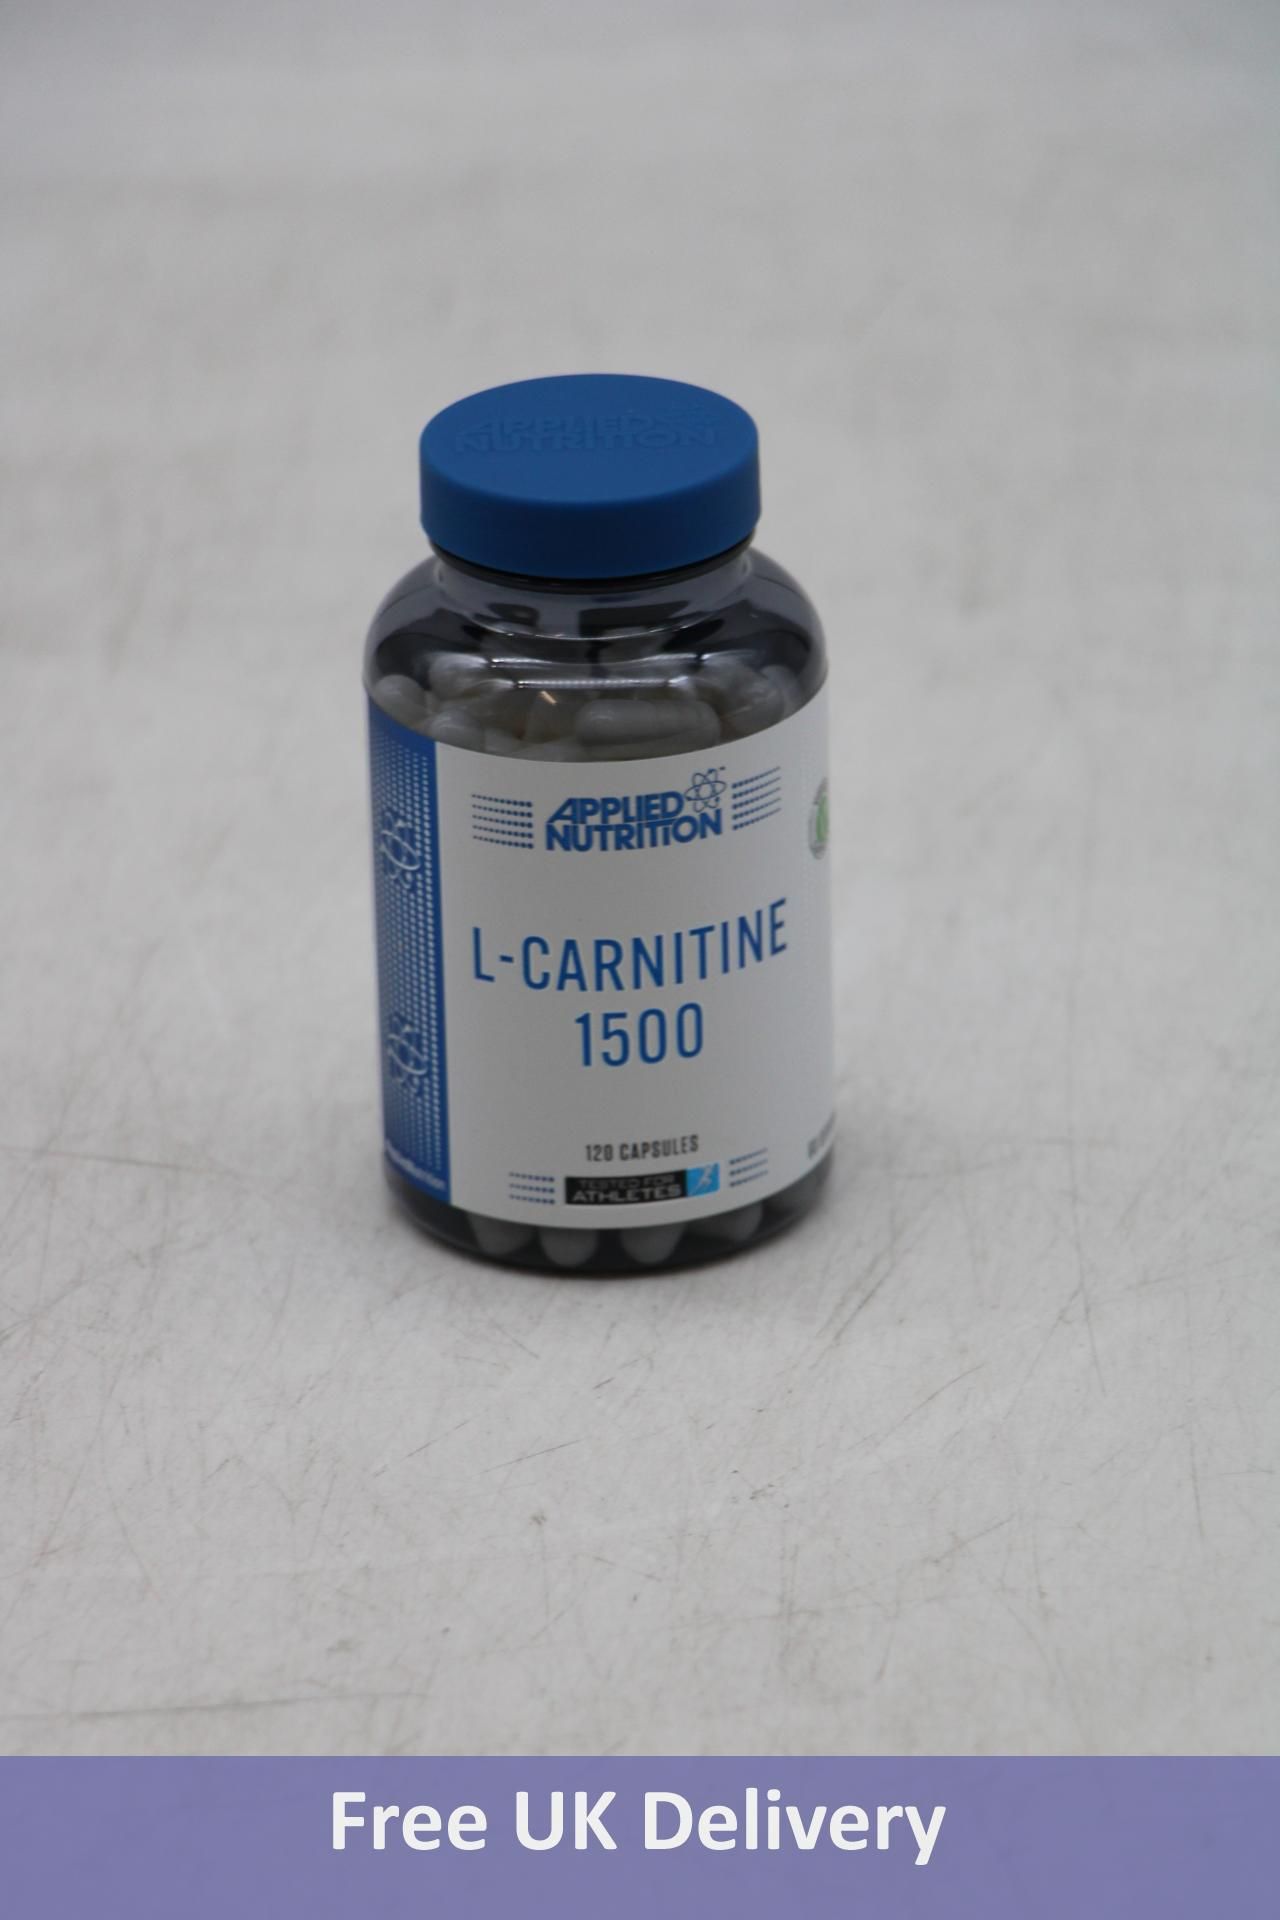 Eleven Pots of Applied Nutrition L-Citrulline 1500 Supplement, 120 Capsules Per Pot, 107g, Expiry Da